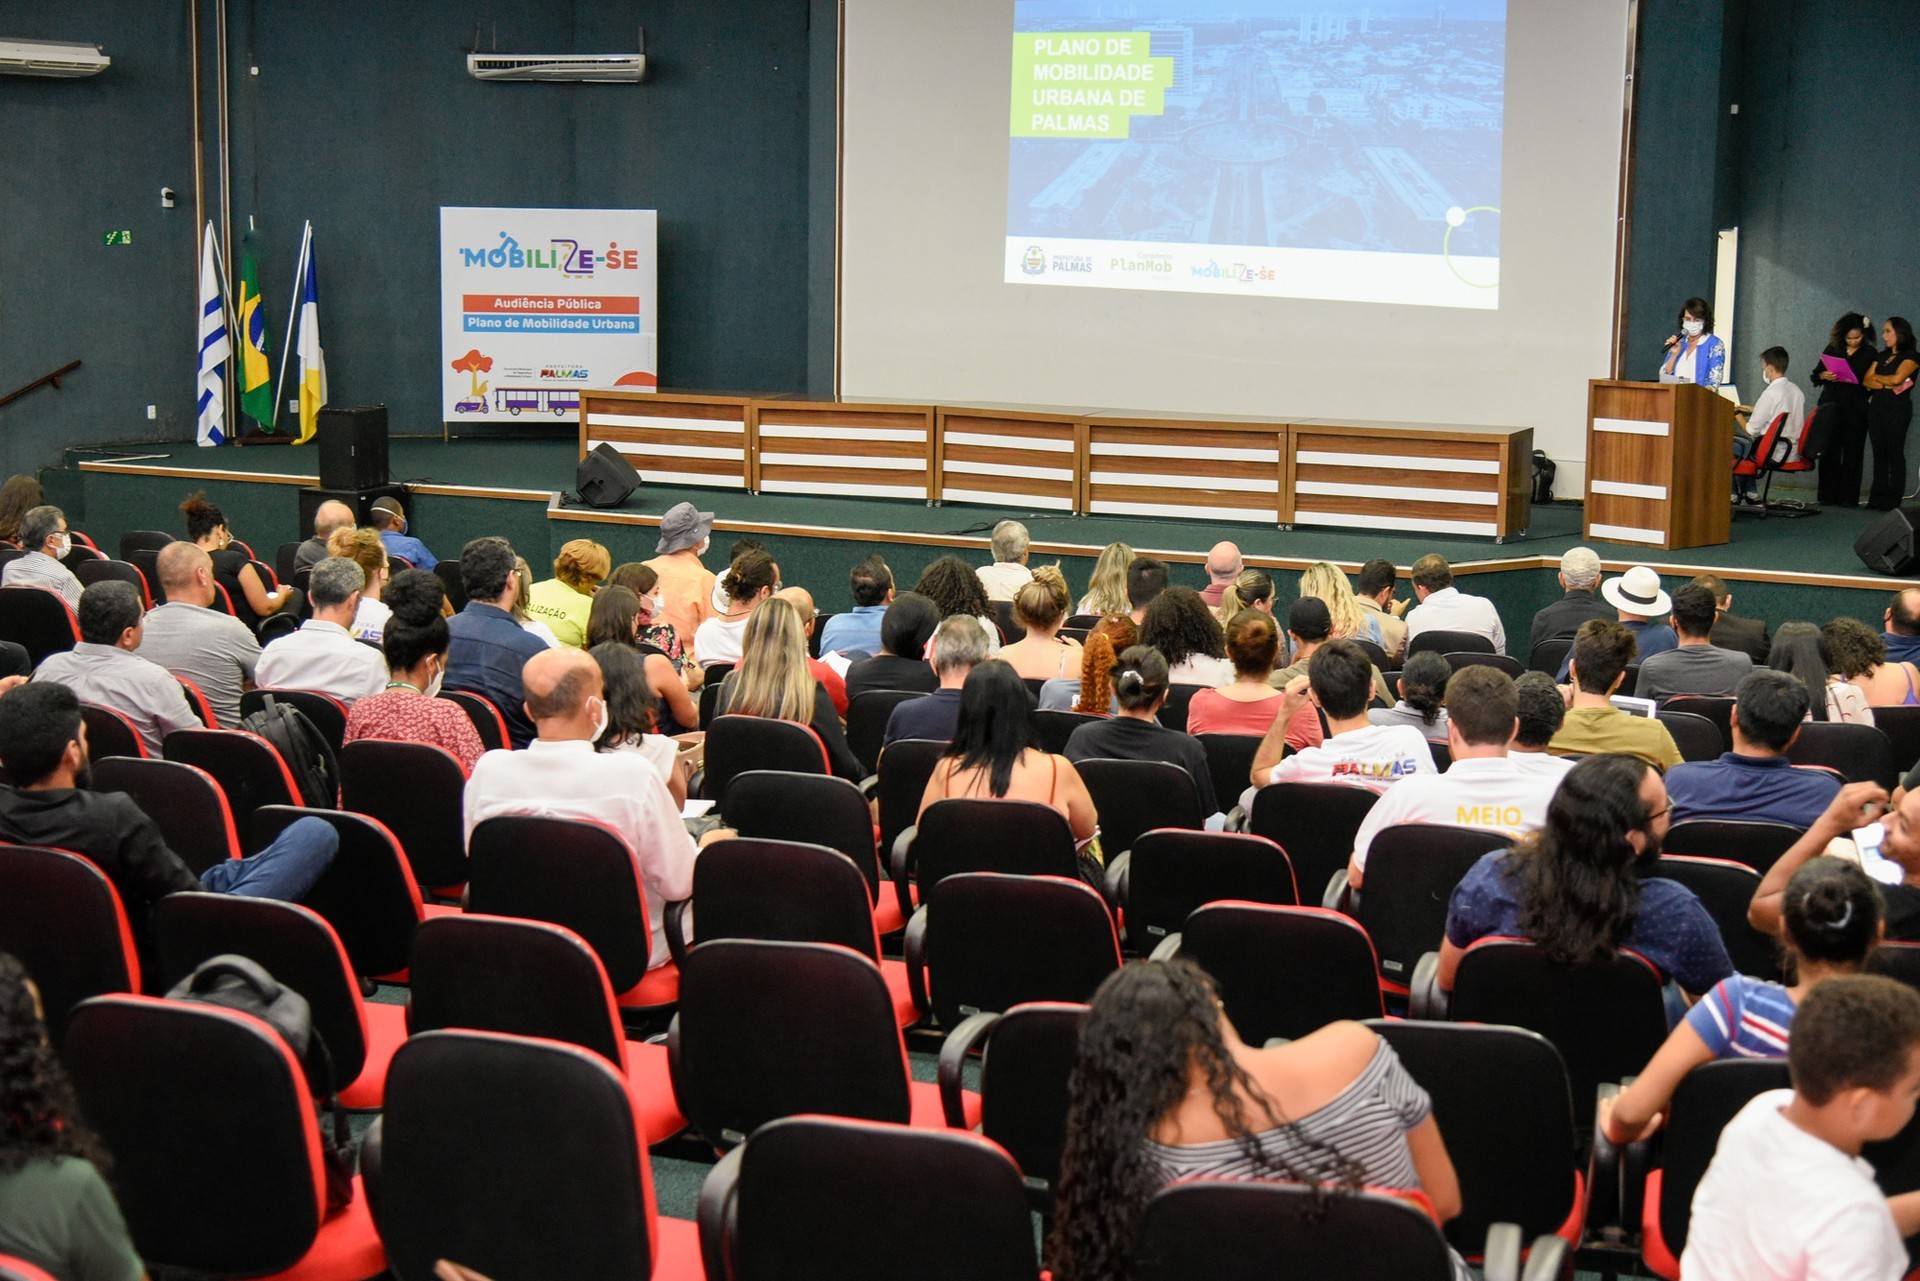 Audiência pública realizada pada discutir o Plano de Mobilidade Urbana de Palmas